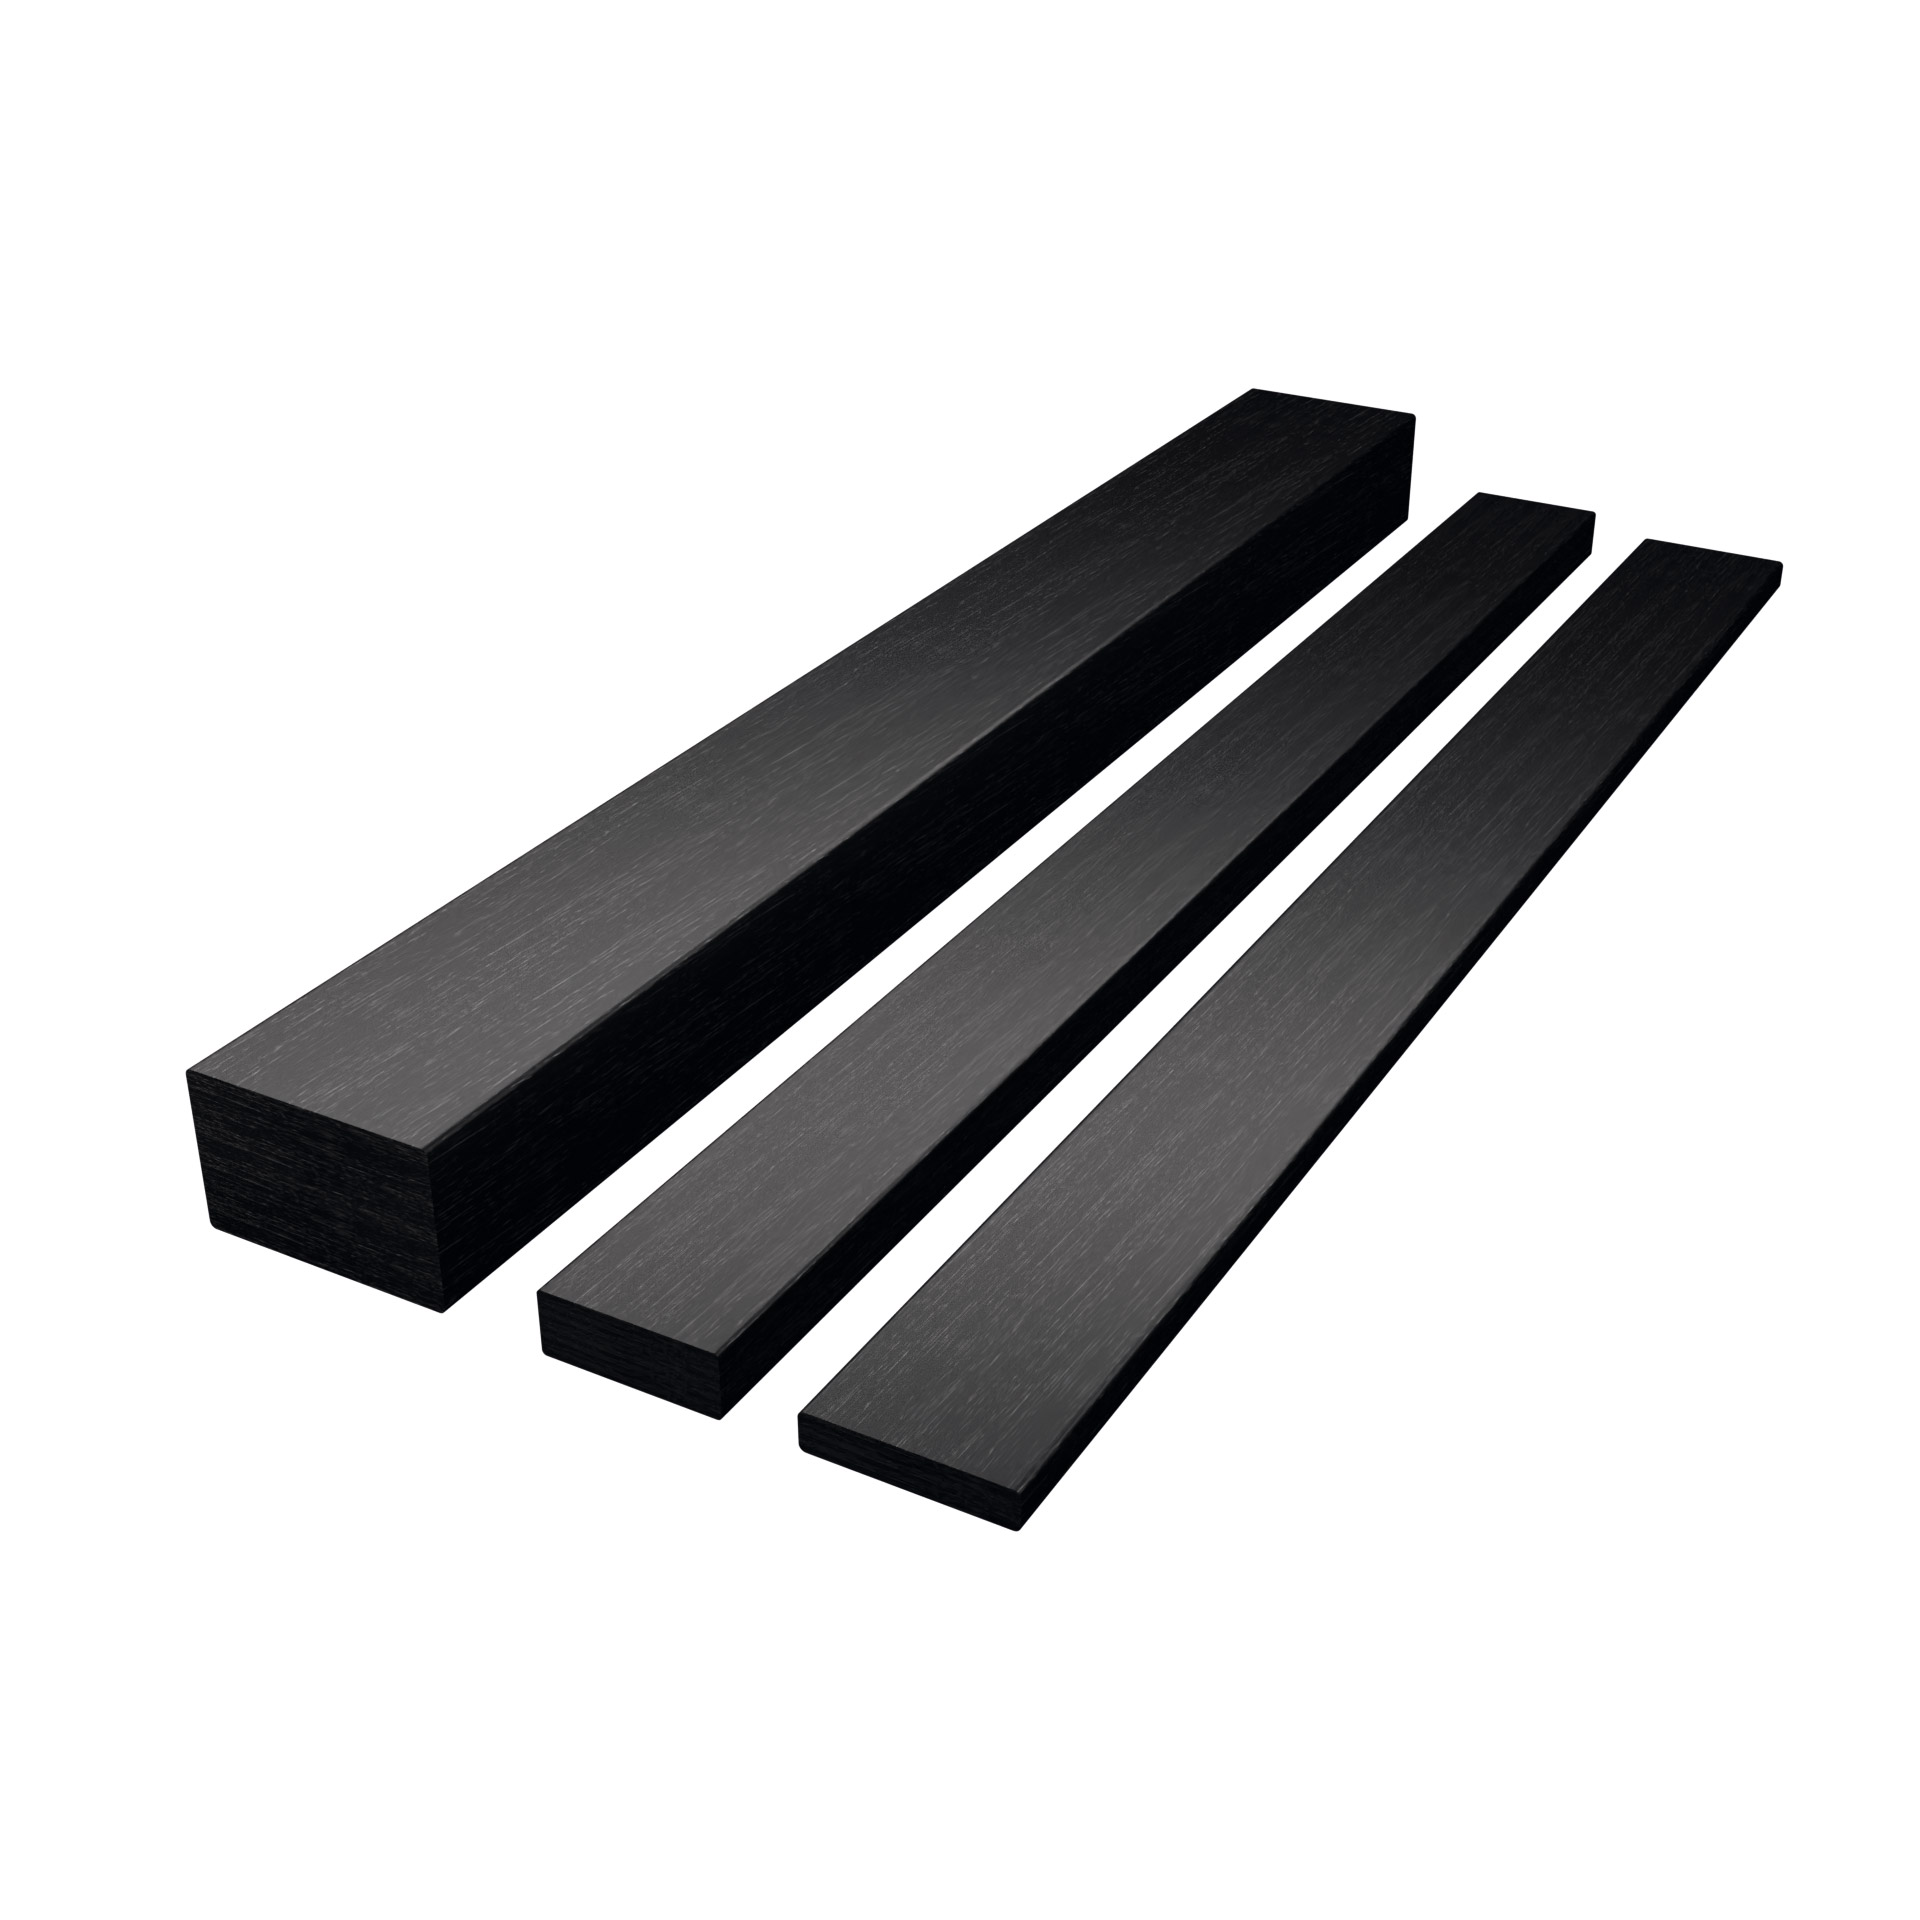 CarboSix carbon fibre Rectangular bars